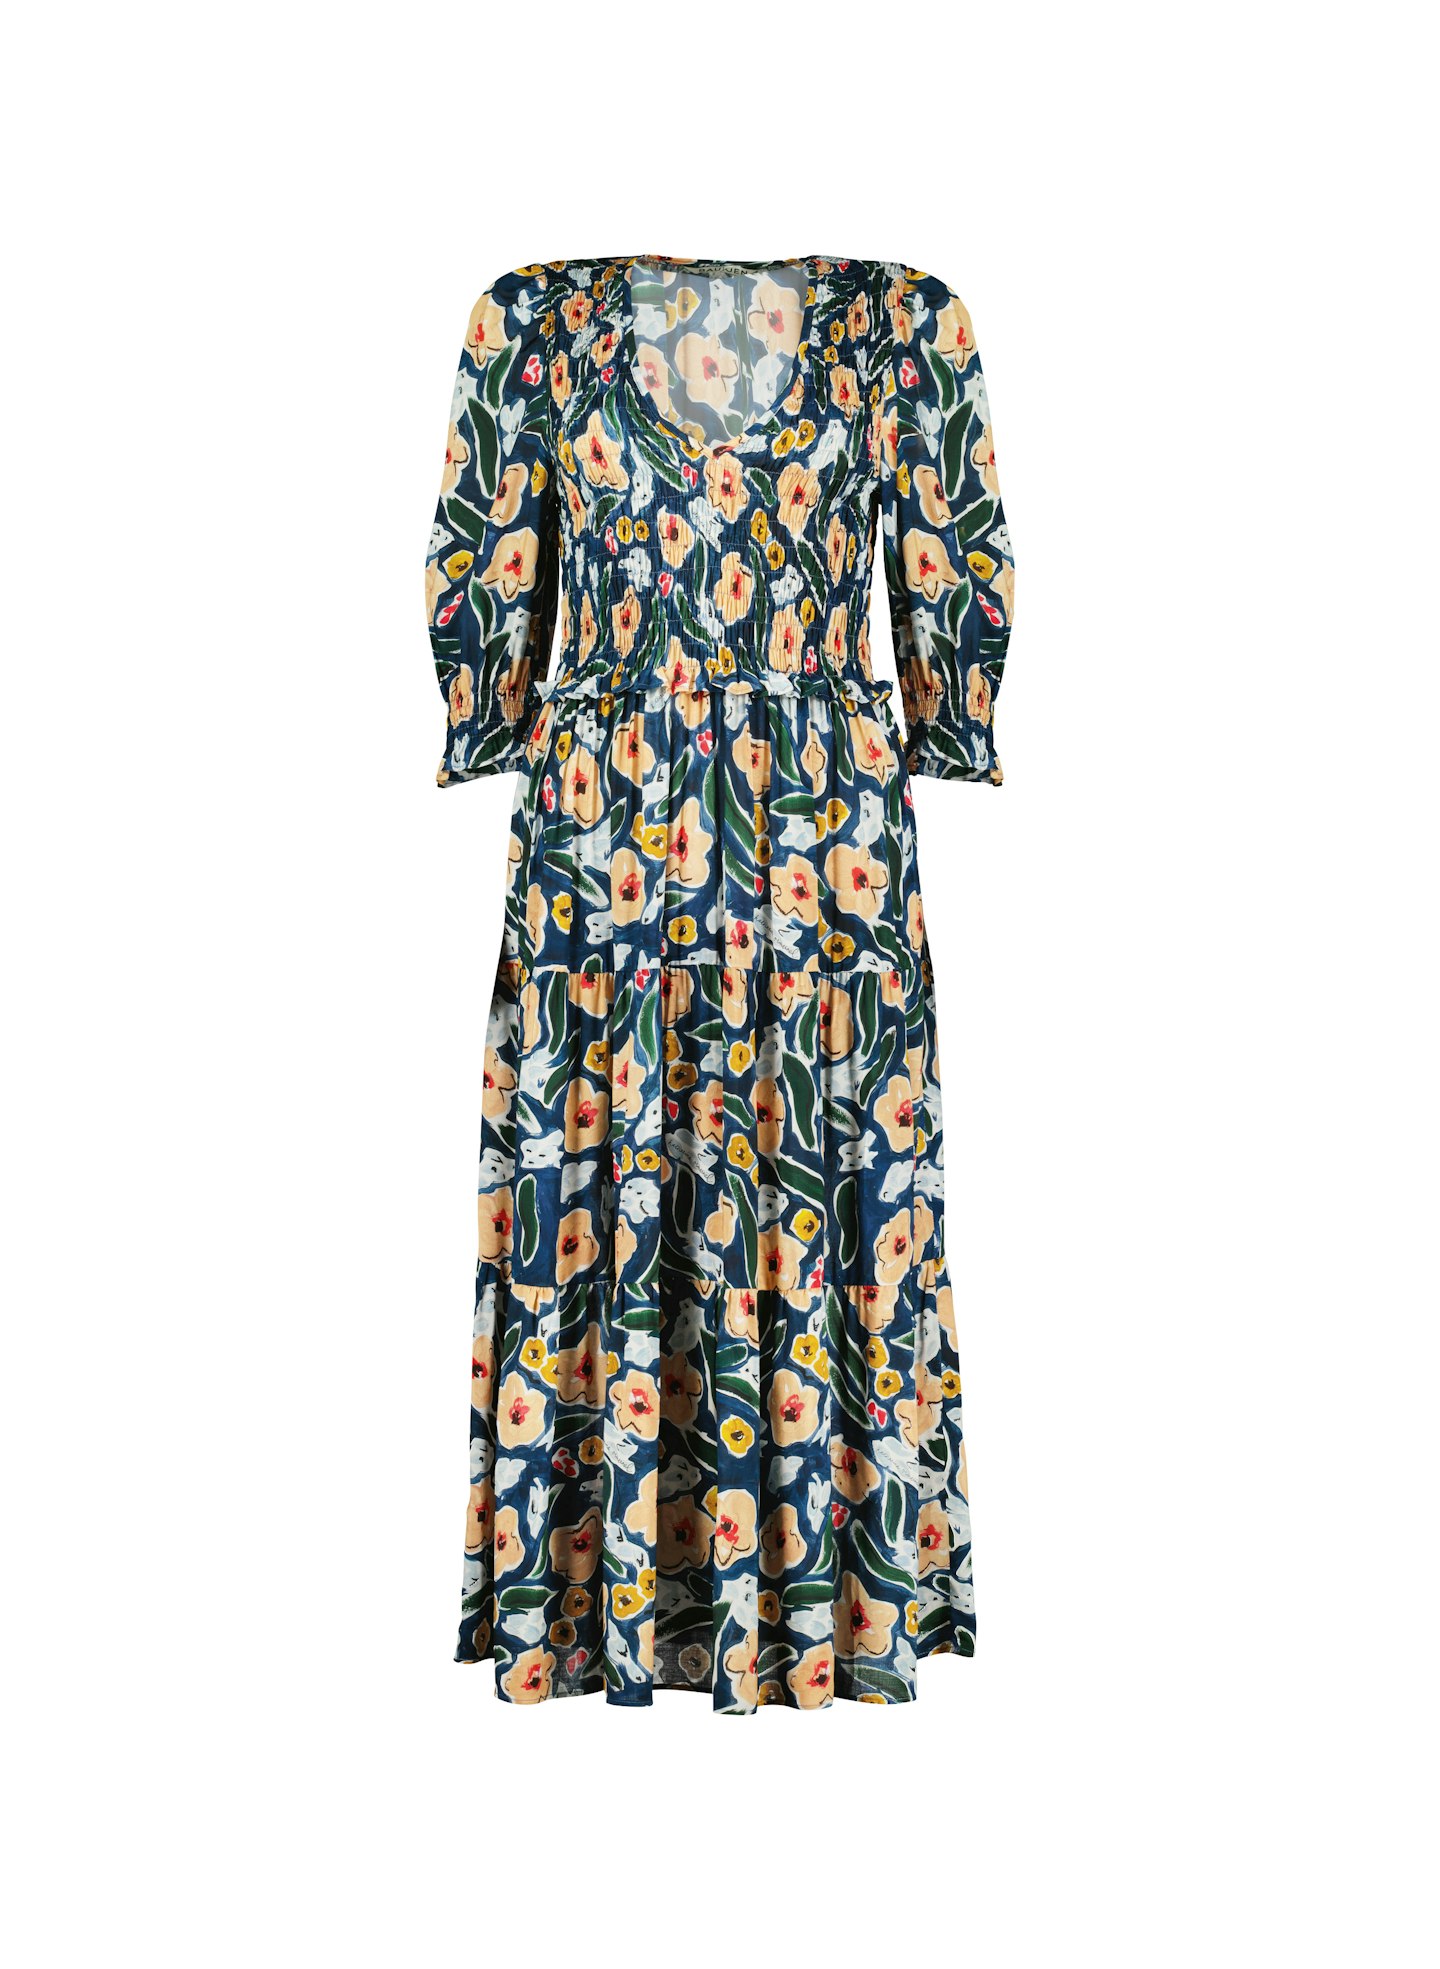 Florence Dress with LENZINGu2122 ECOVEROu2122, £179